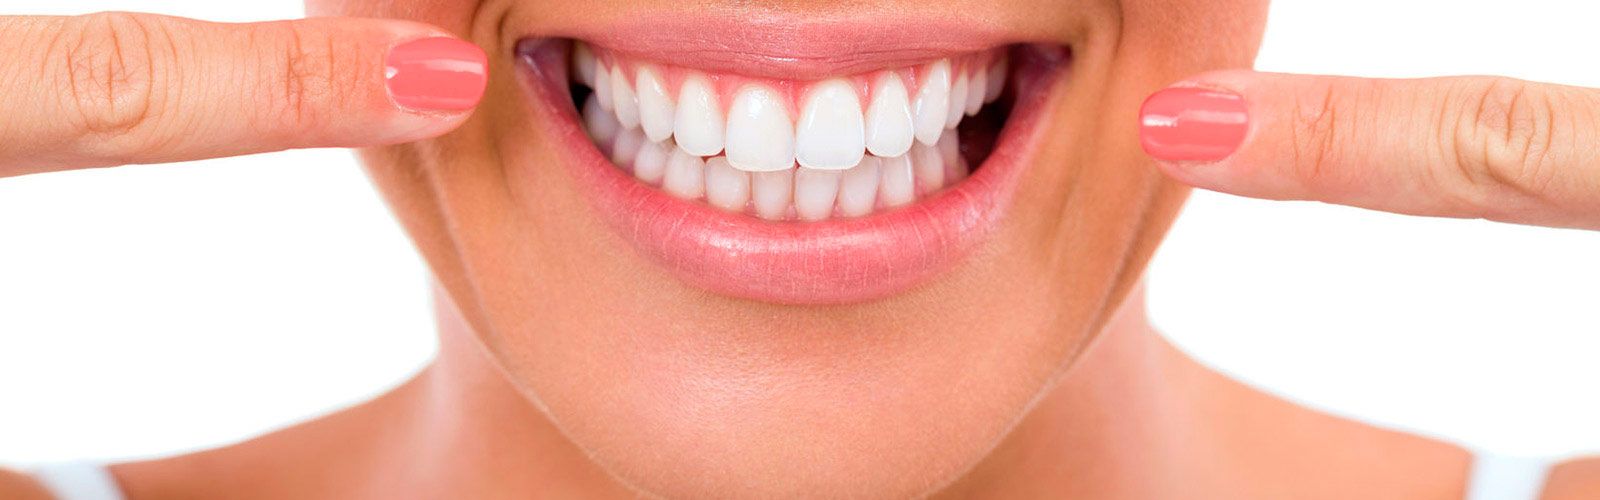 Clínica Dental Valentín Ojeda mujer sonriendo